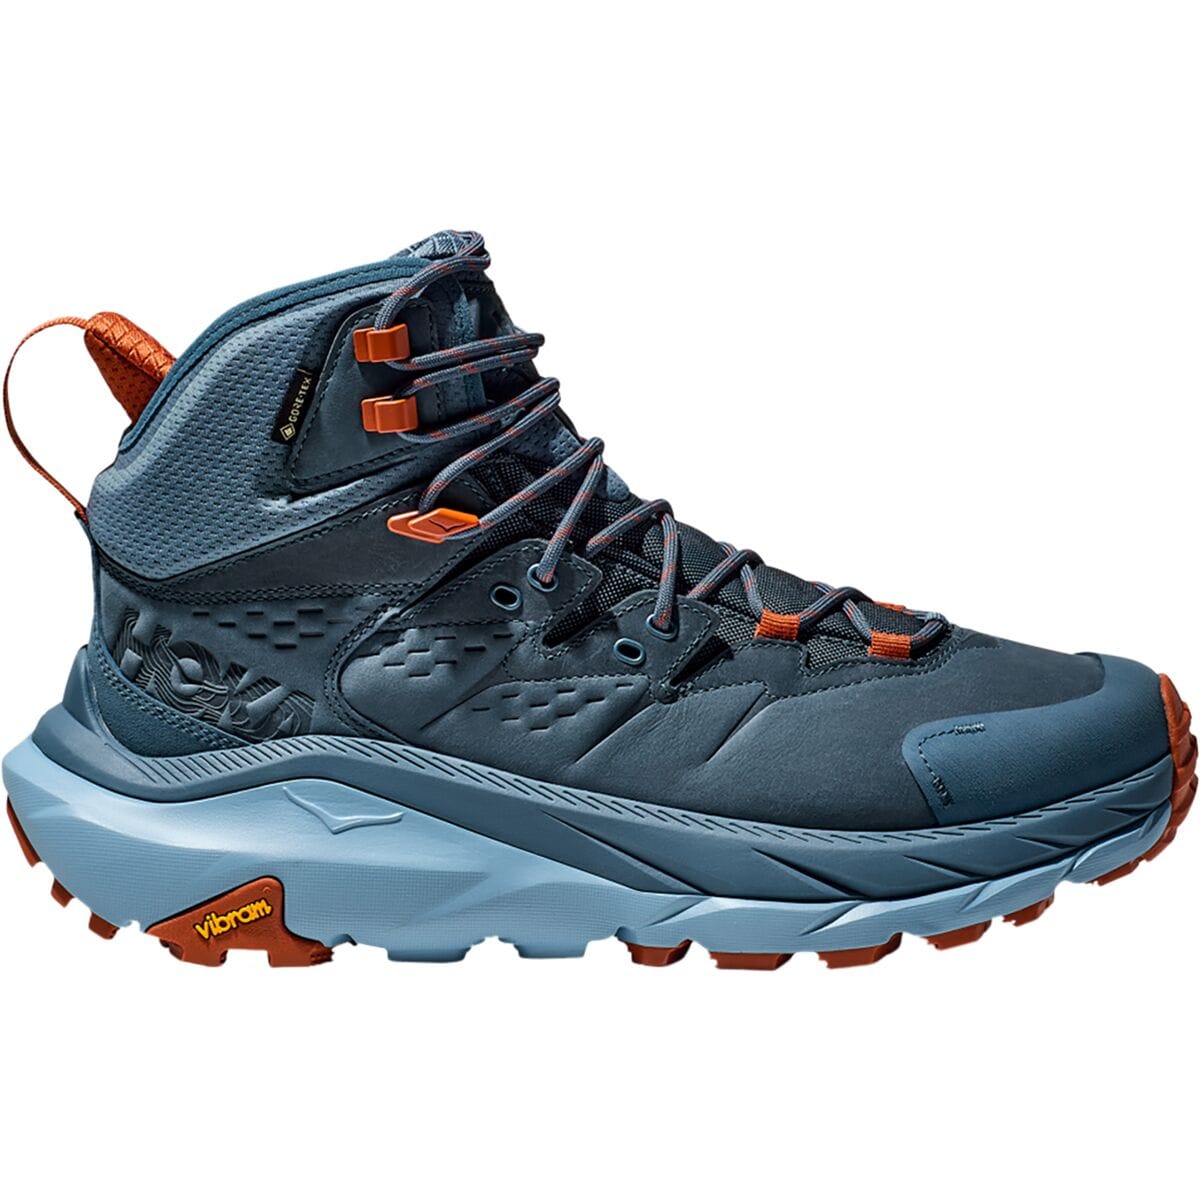 Kaha 2 GTX Hiking Boot - Men